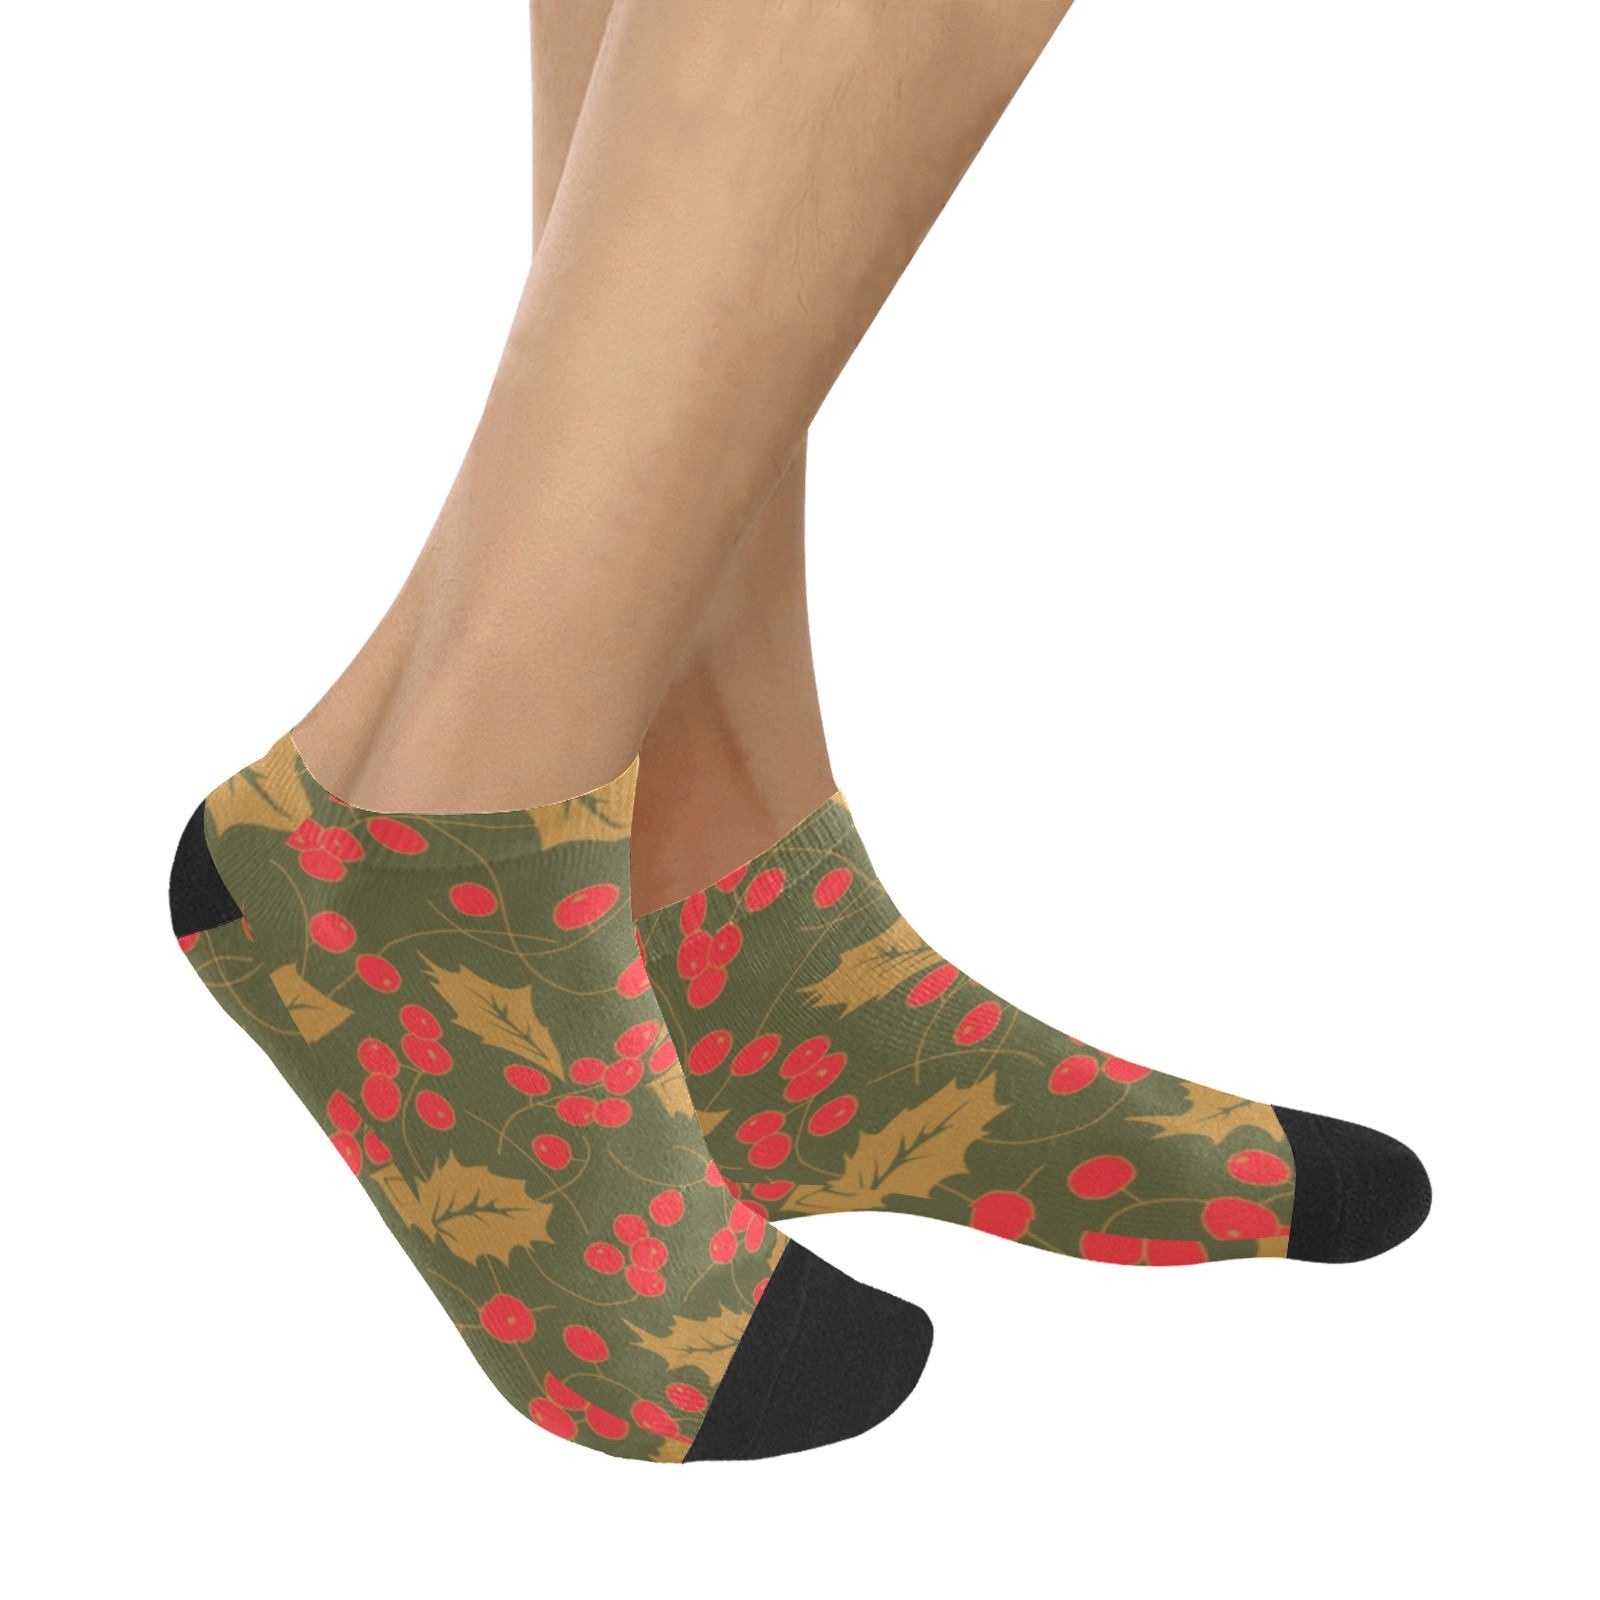 Socks Women's Ankle Socks